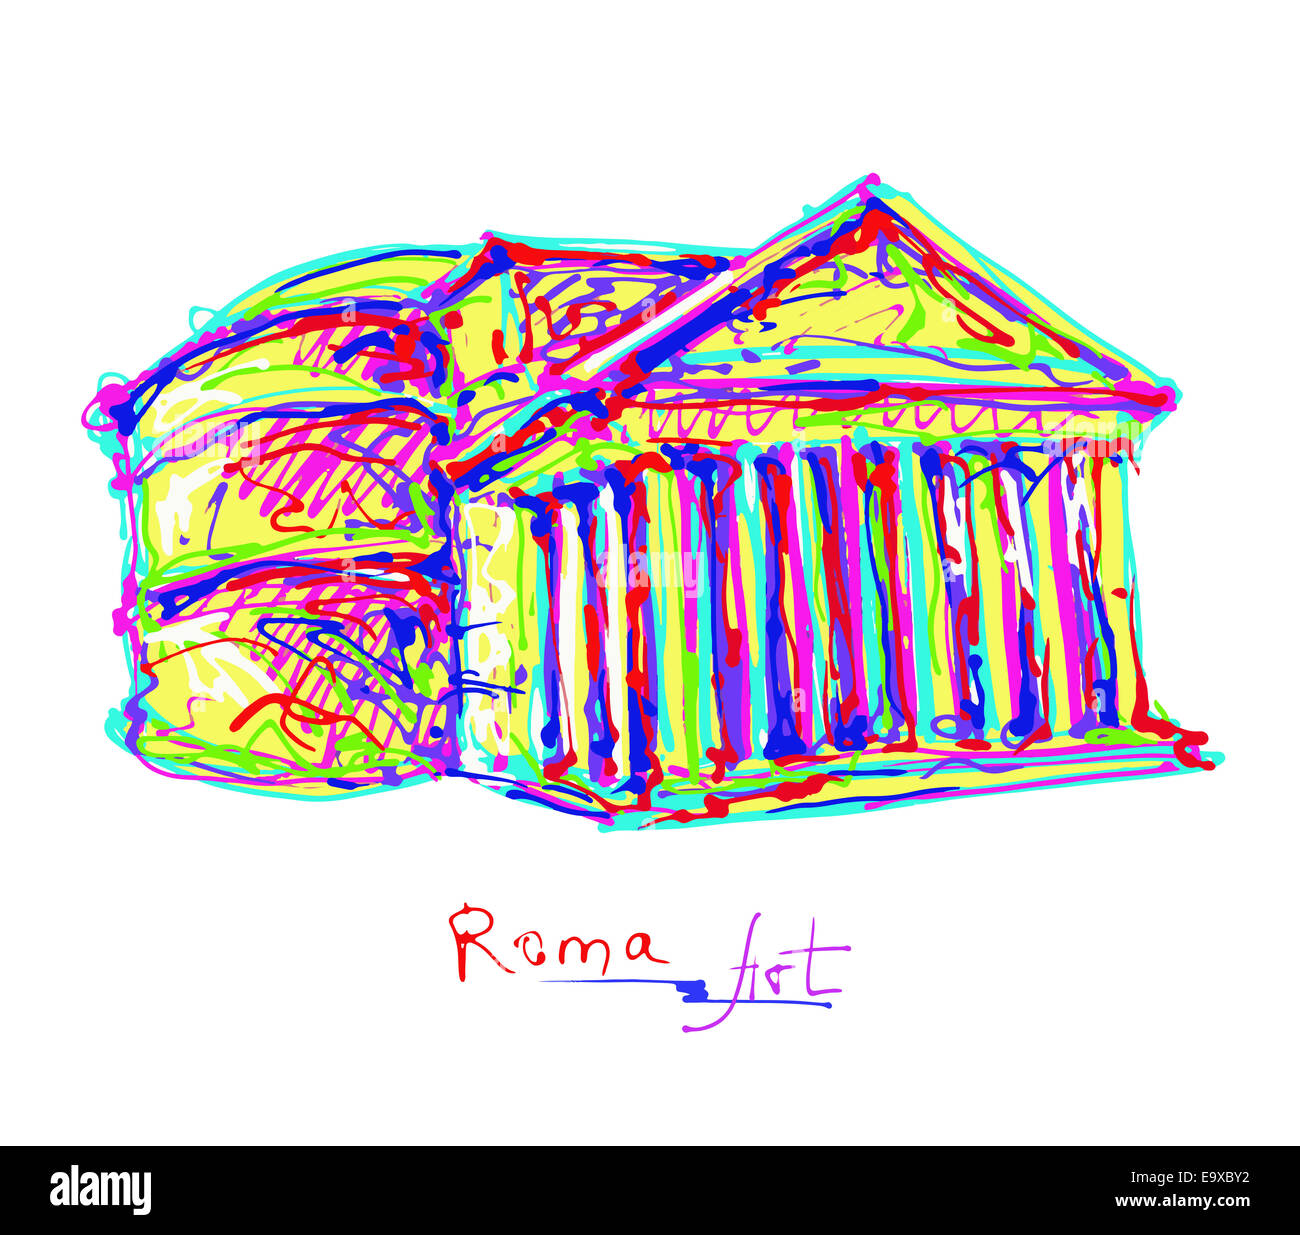 Célèbre place de Rome Italie, dessin original en couleurs arc-en-ciel Banque D'Images